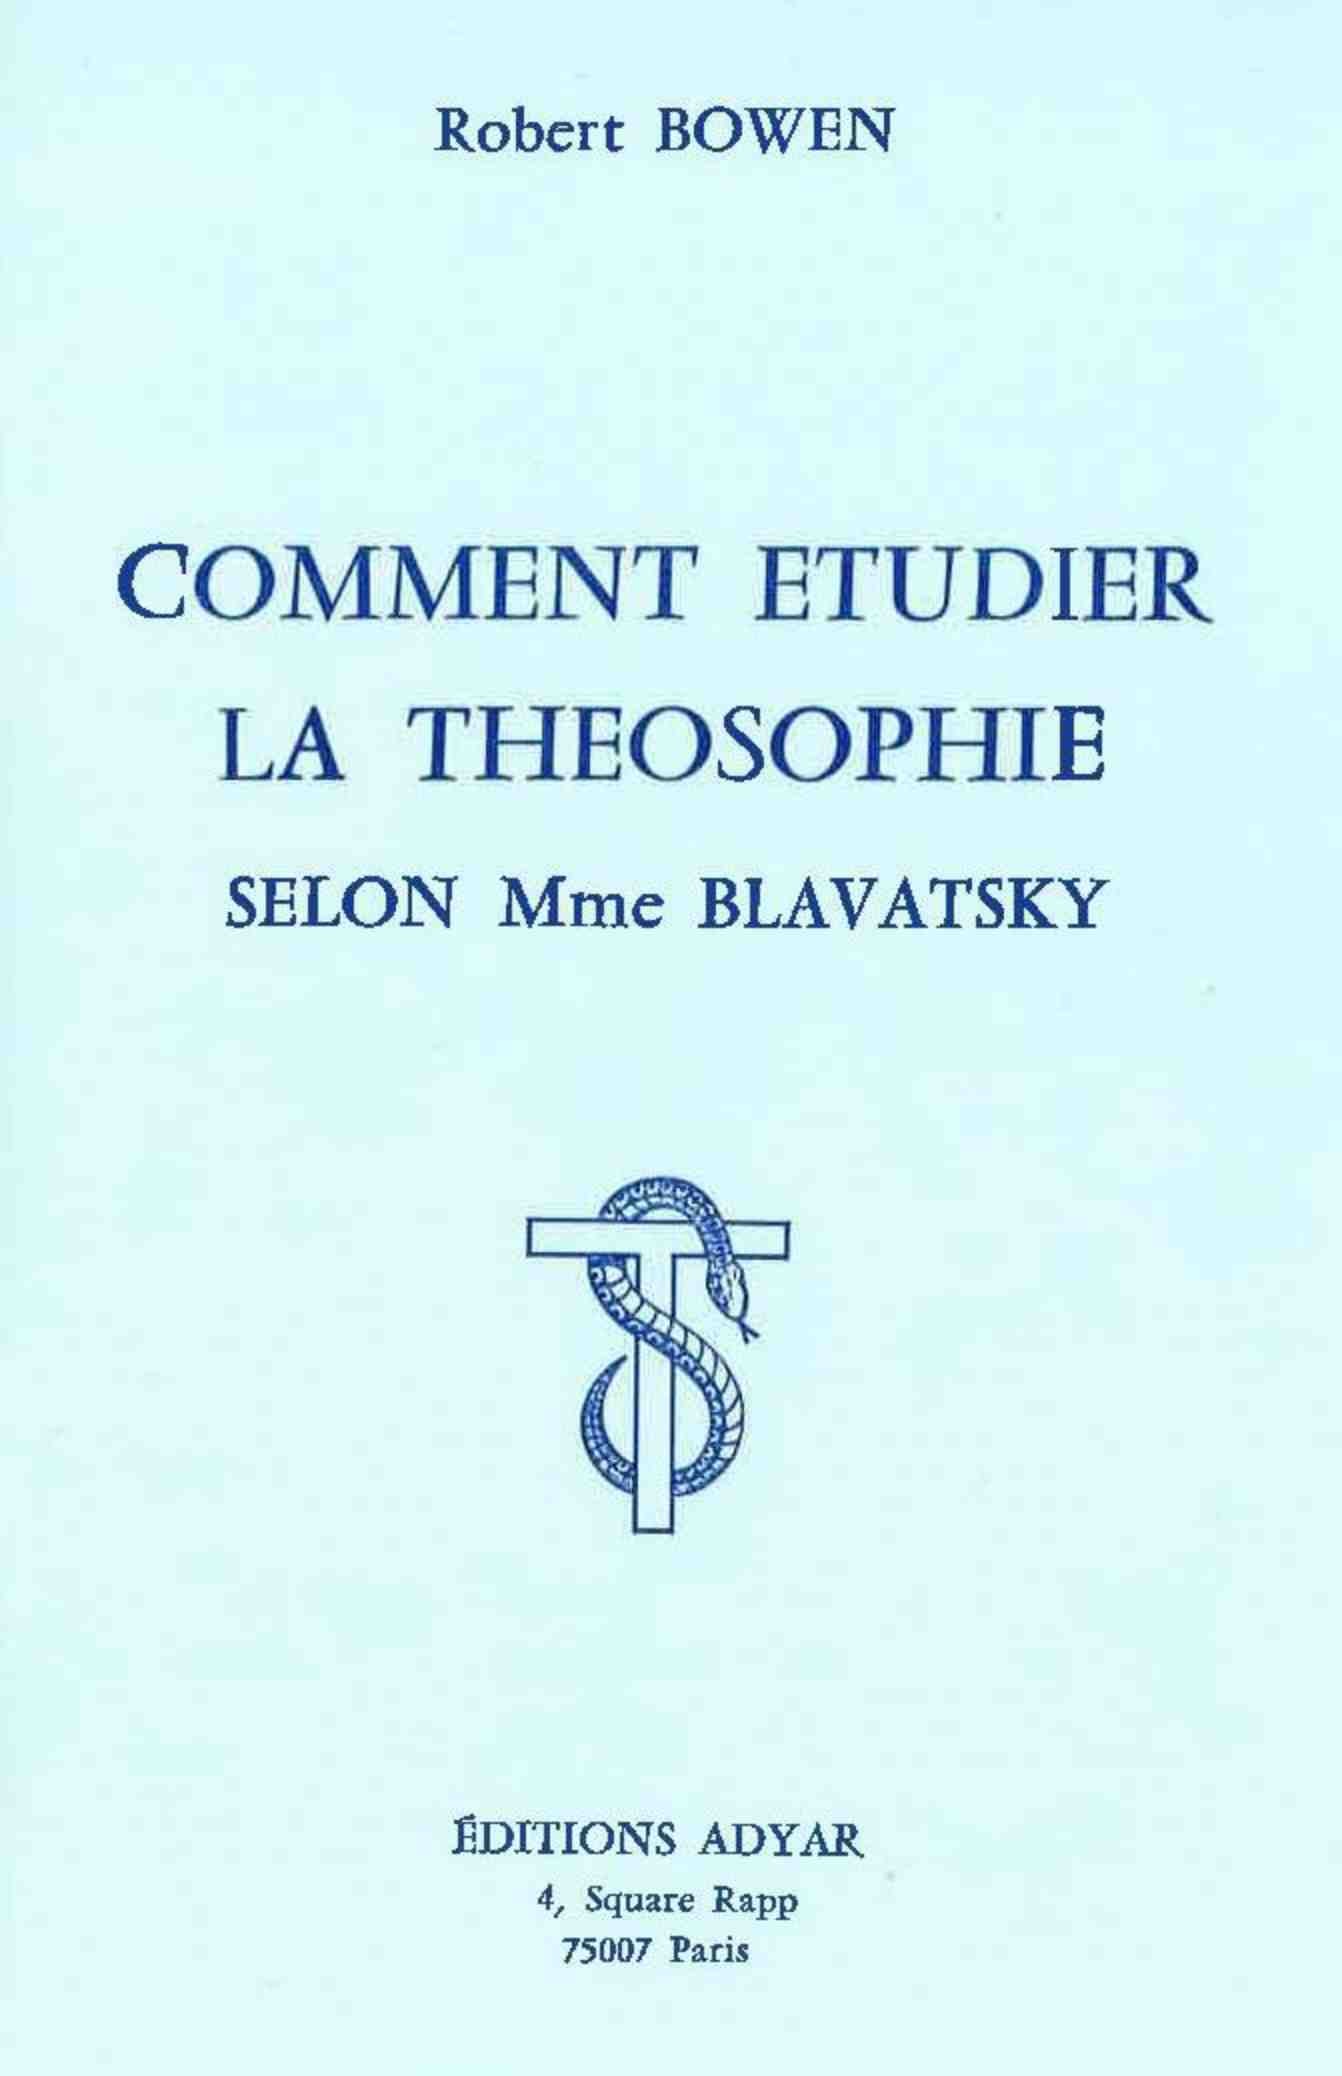 Comment étudier la Théosophie selon Mme Blavatsky